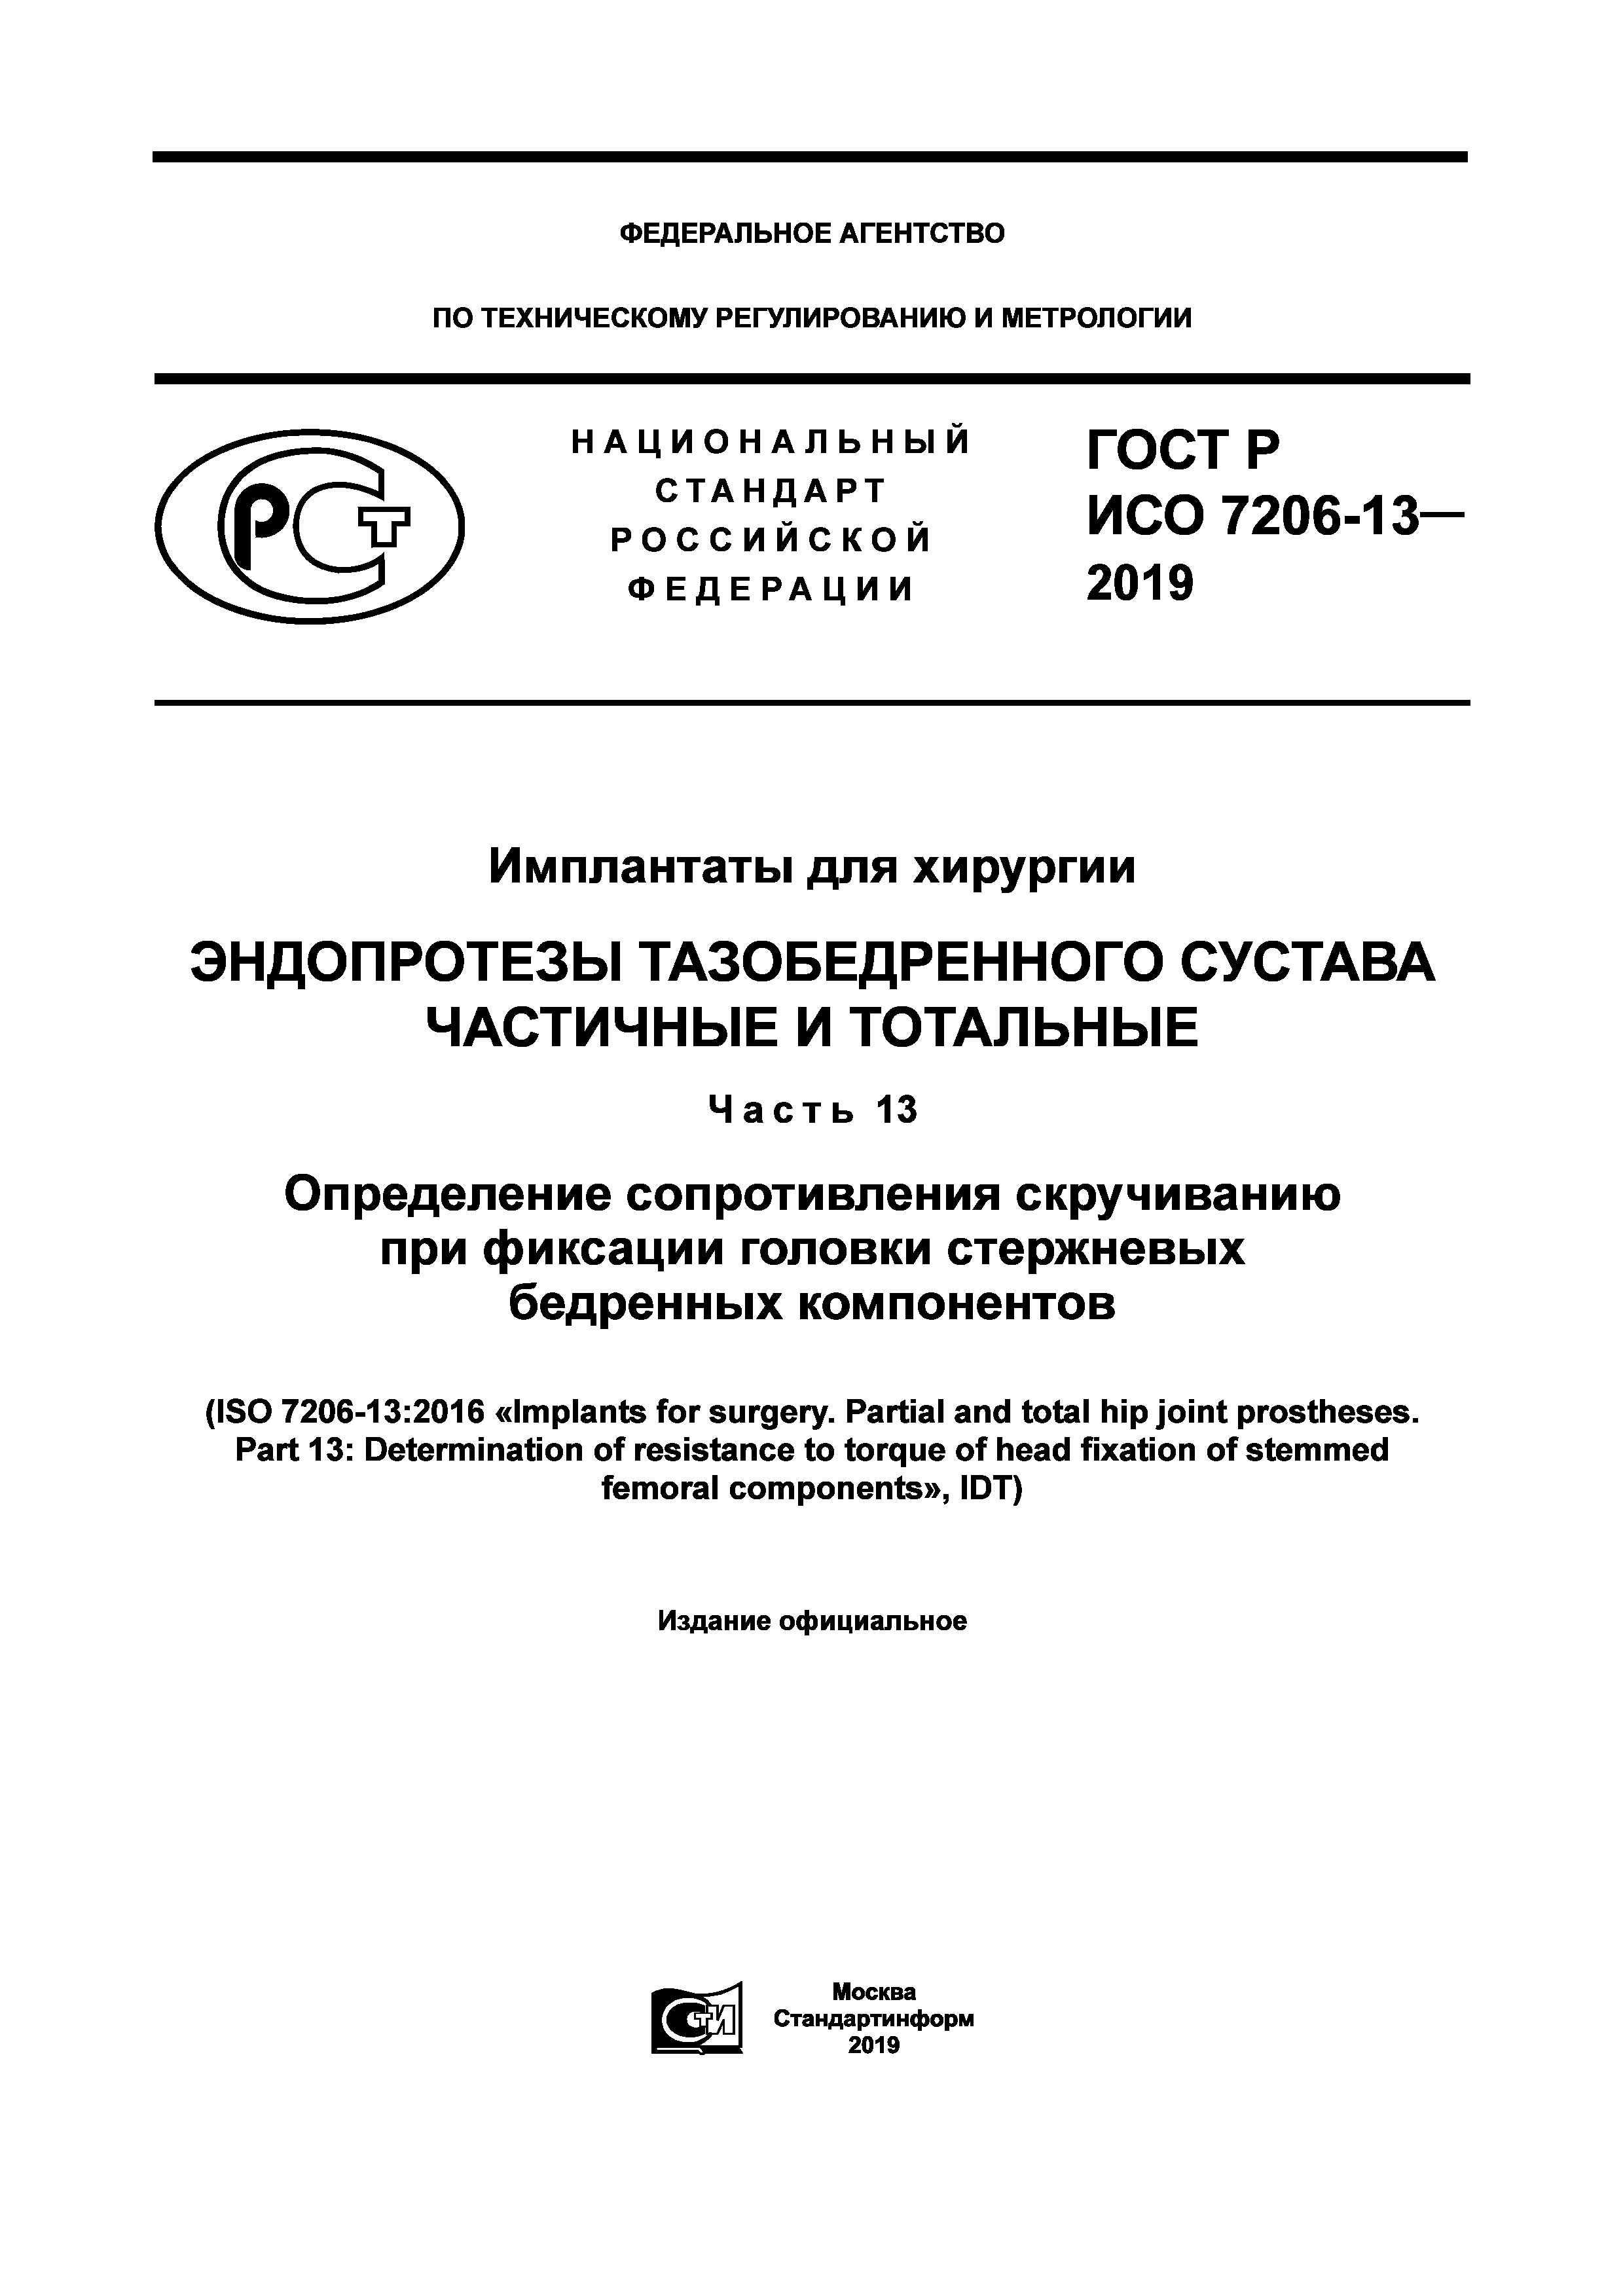 ГОСТ Р ИСО 7206-13-2019